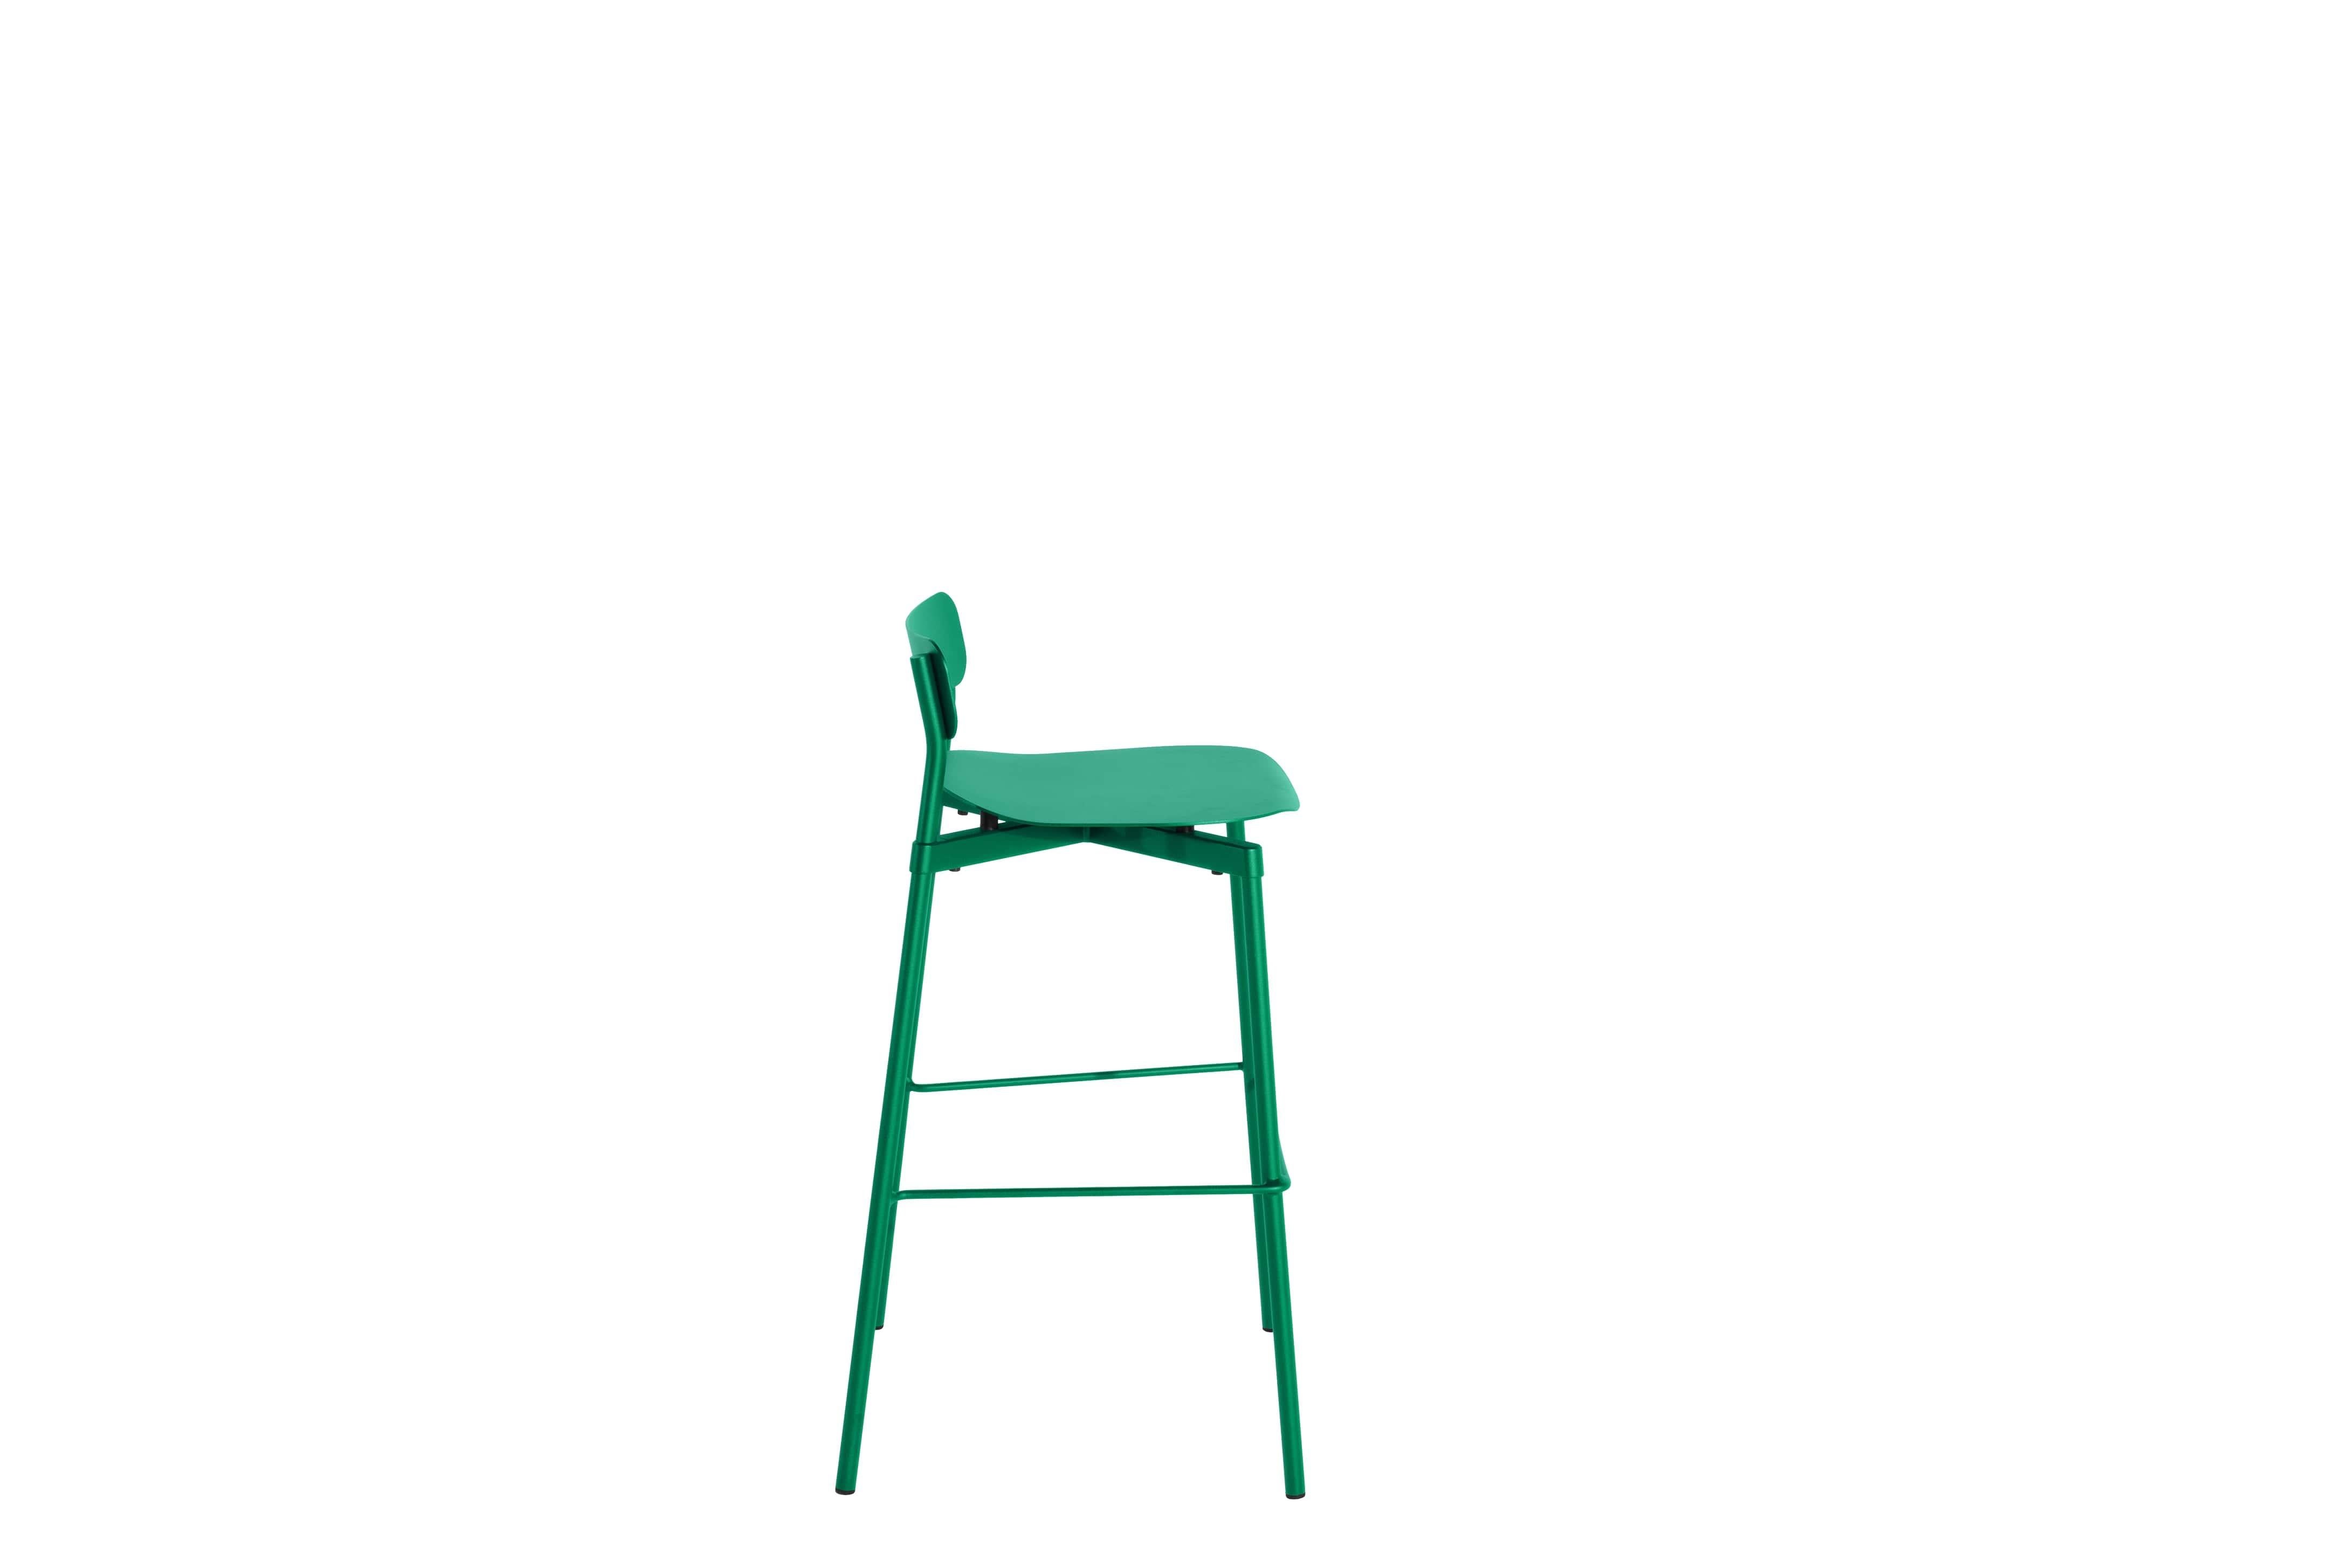 Petite Friture Large Fromme Tabouret de bar en aluminium vert menthe par Tom Chung, 2020

La collection S/One se distingue par sa ligne épurée et son design compact. Les absorbeurs placés sous les sièges leur confèrent une flexibilité souple et